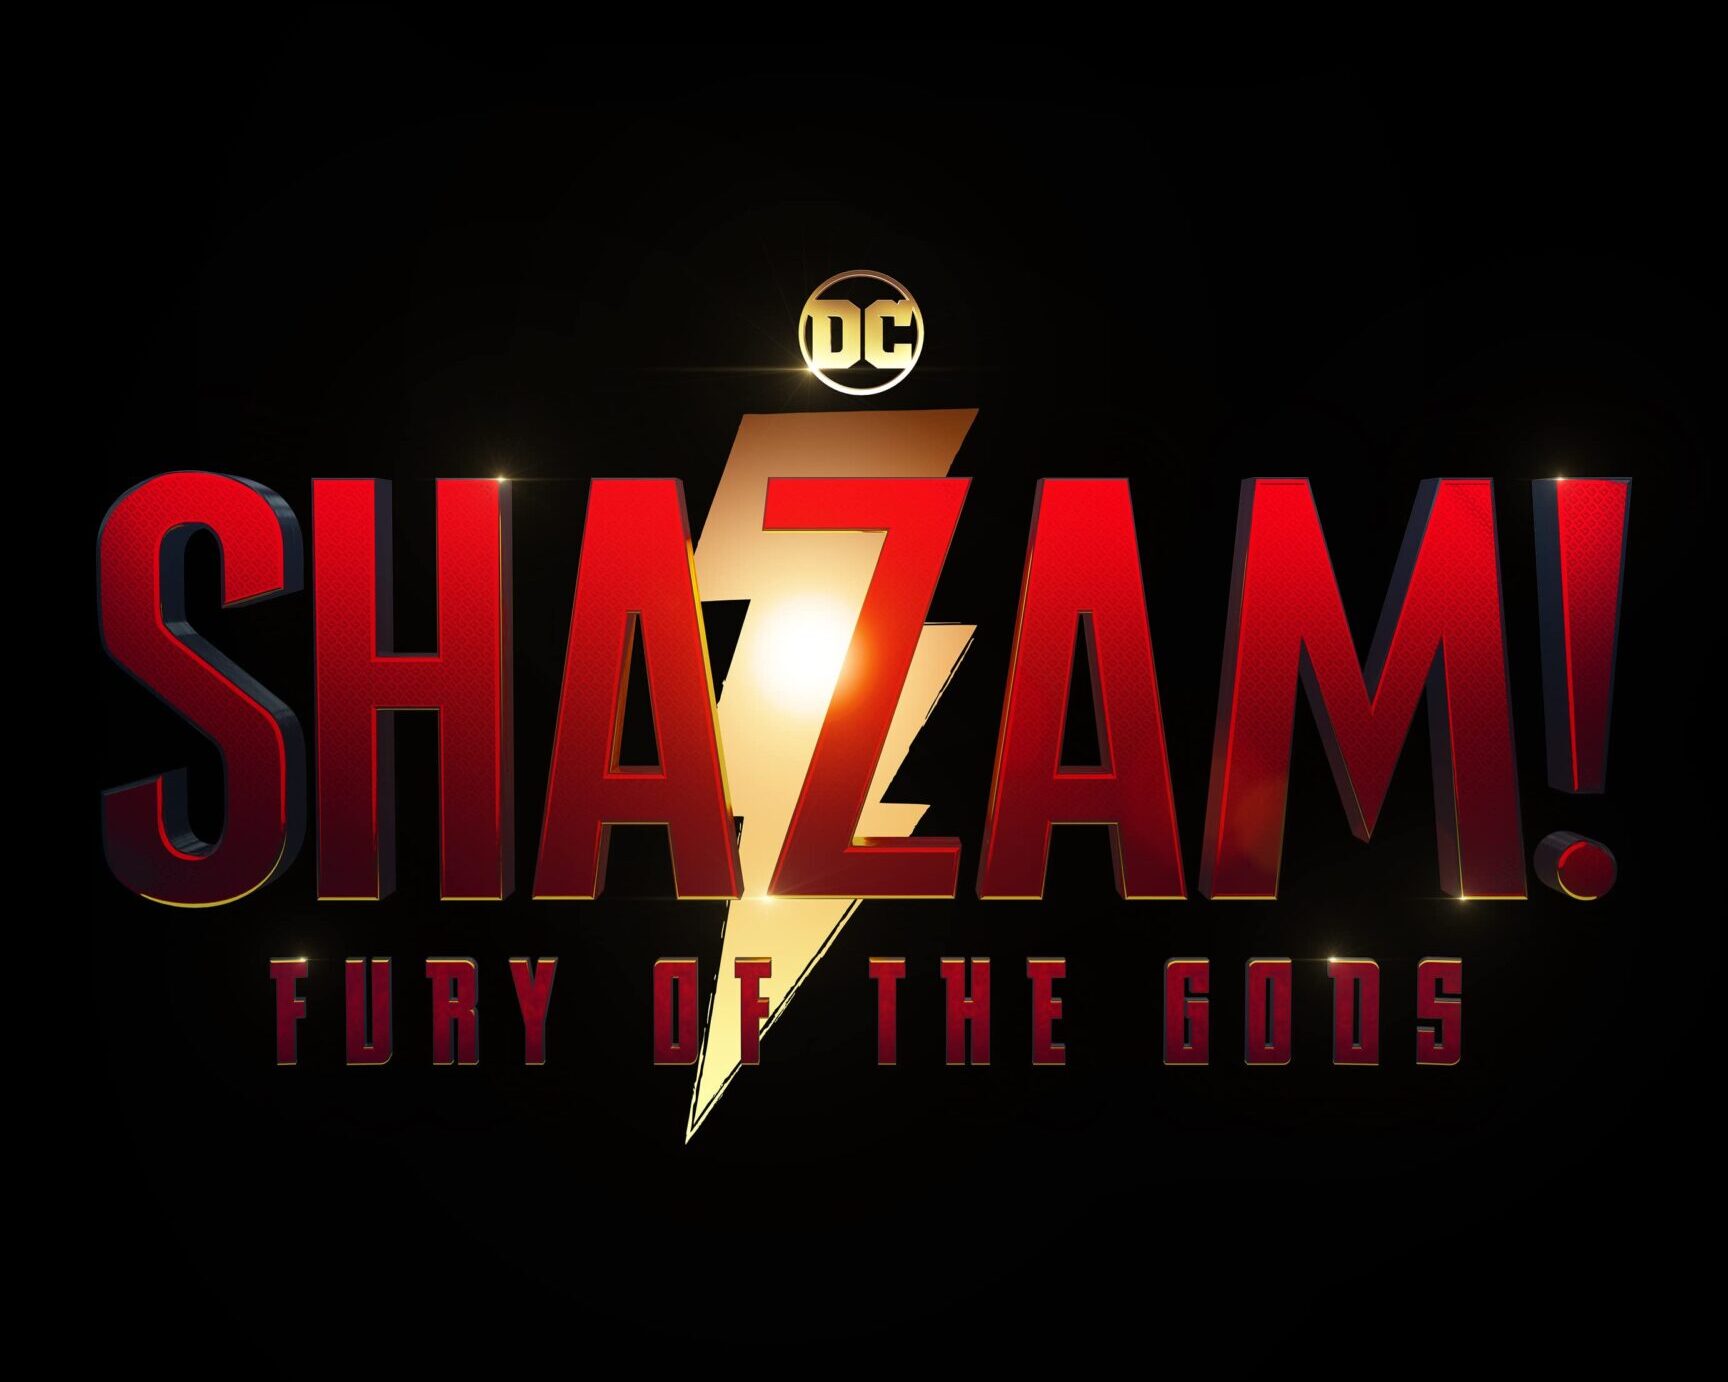 Shazam! Fury of the Gods – Superhero’s Myth